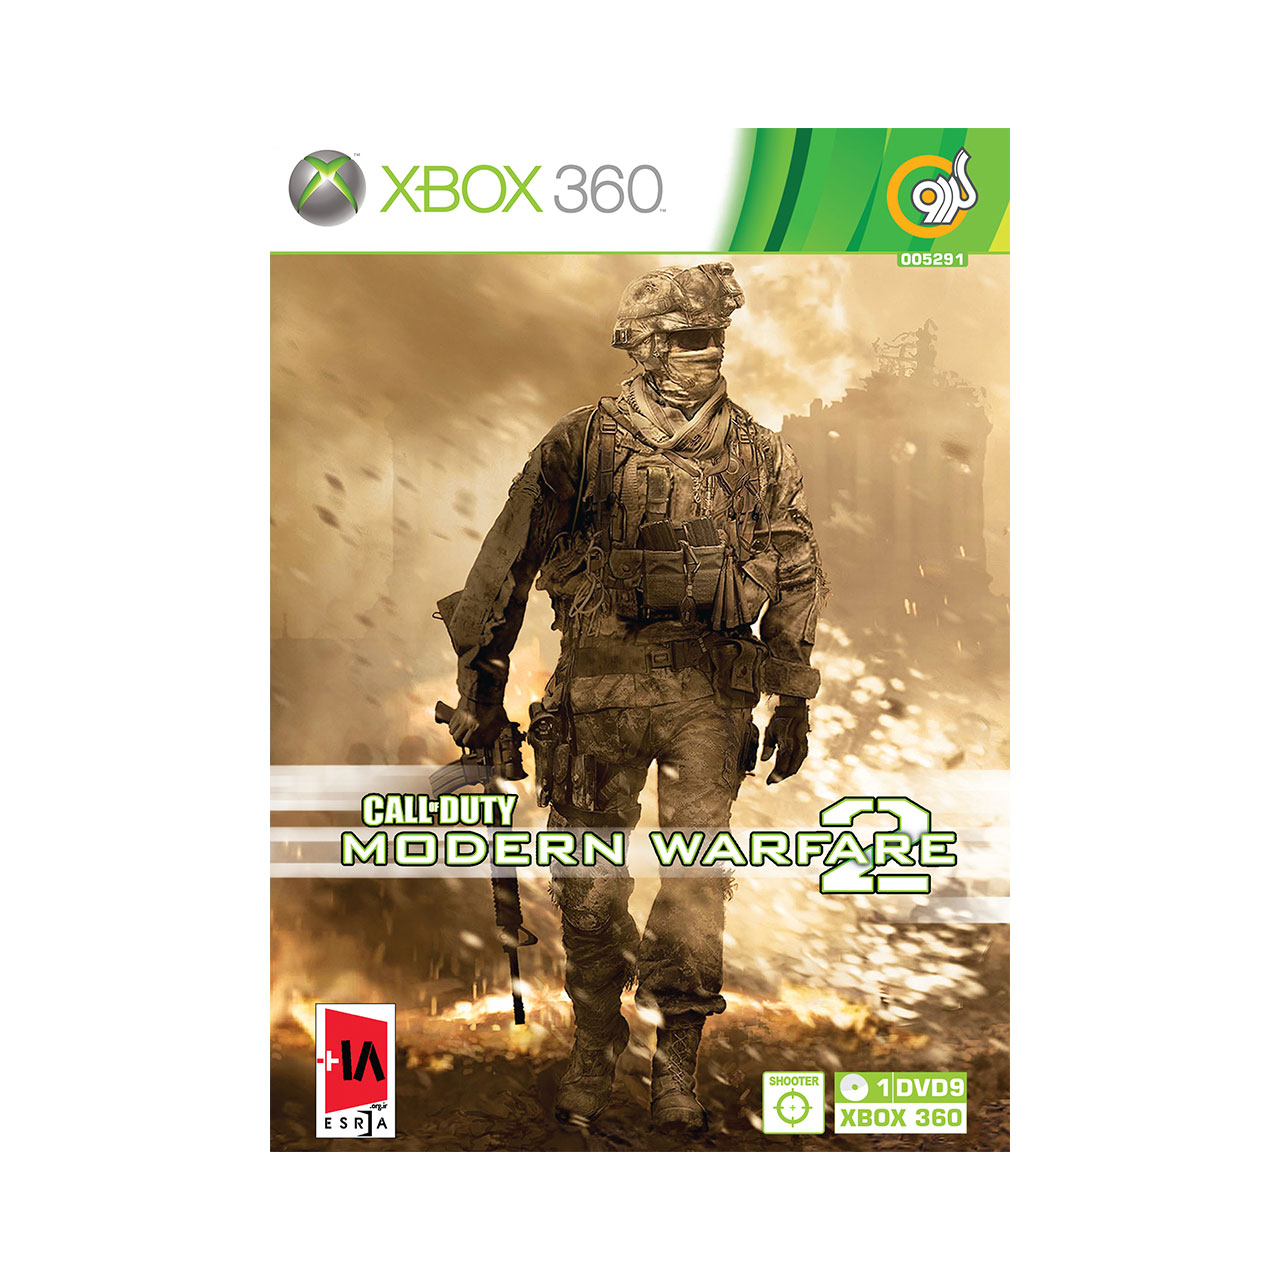 نقد و بررسی بازی Call of Duty Modern Warfare 2 مخصوص XBOX 360 توسط خریداران